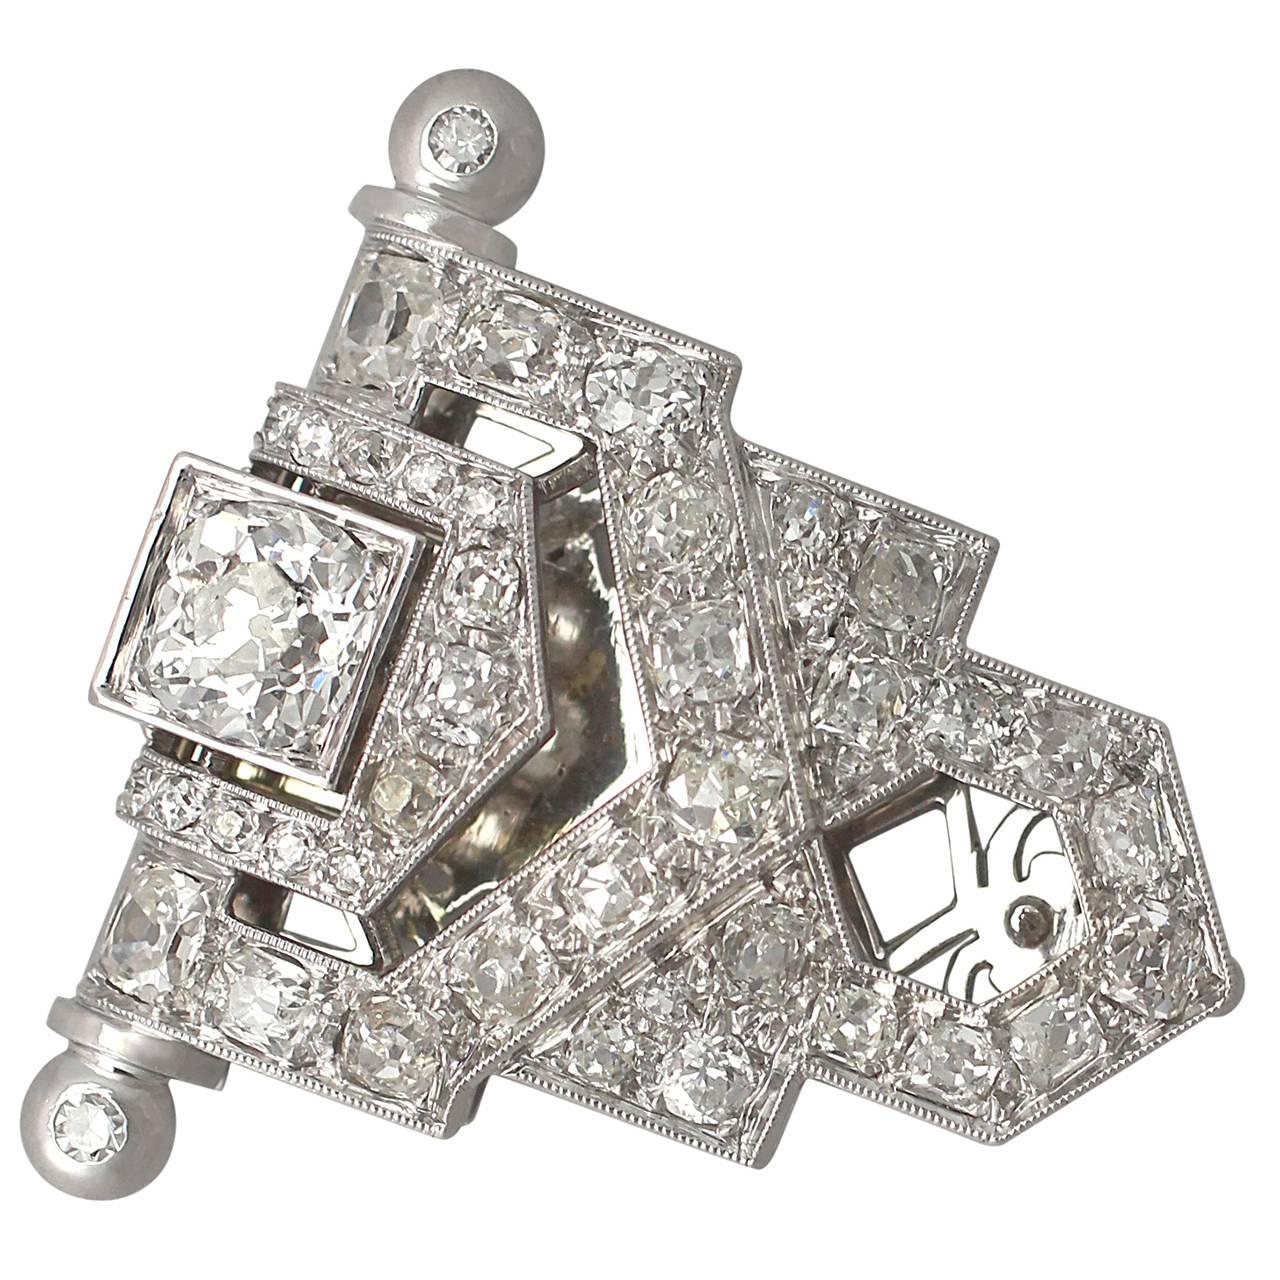 3.50Ct Diamond, 18k White Gold Clip Brooch - Art Deco Style - Antique Circa 1920